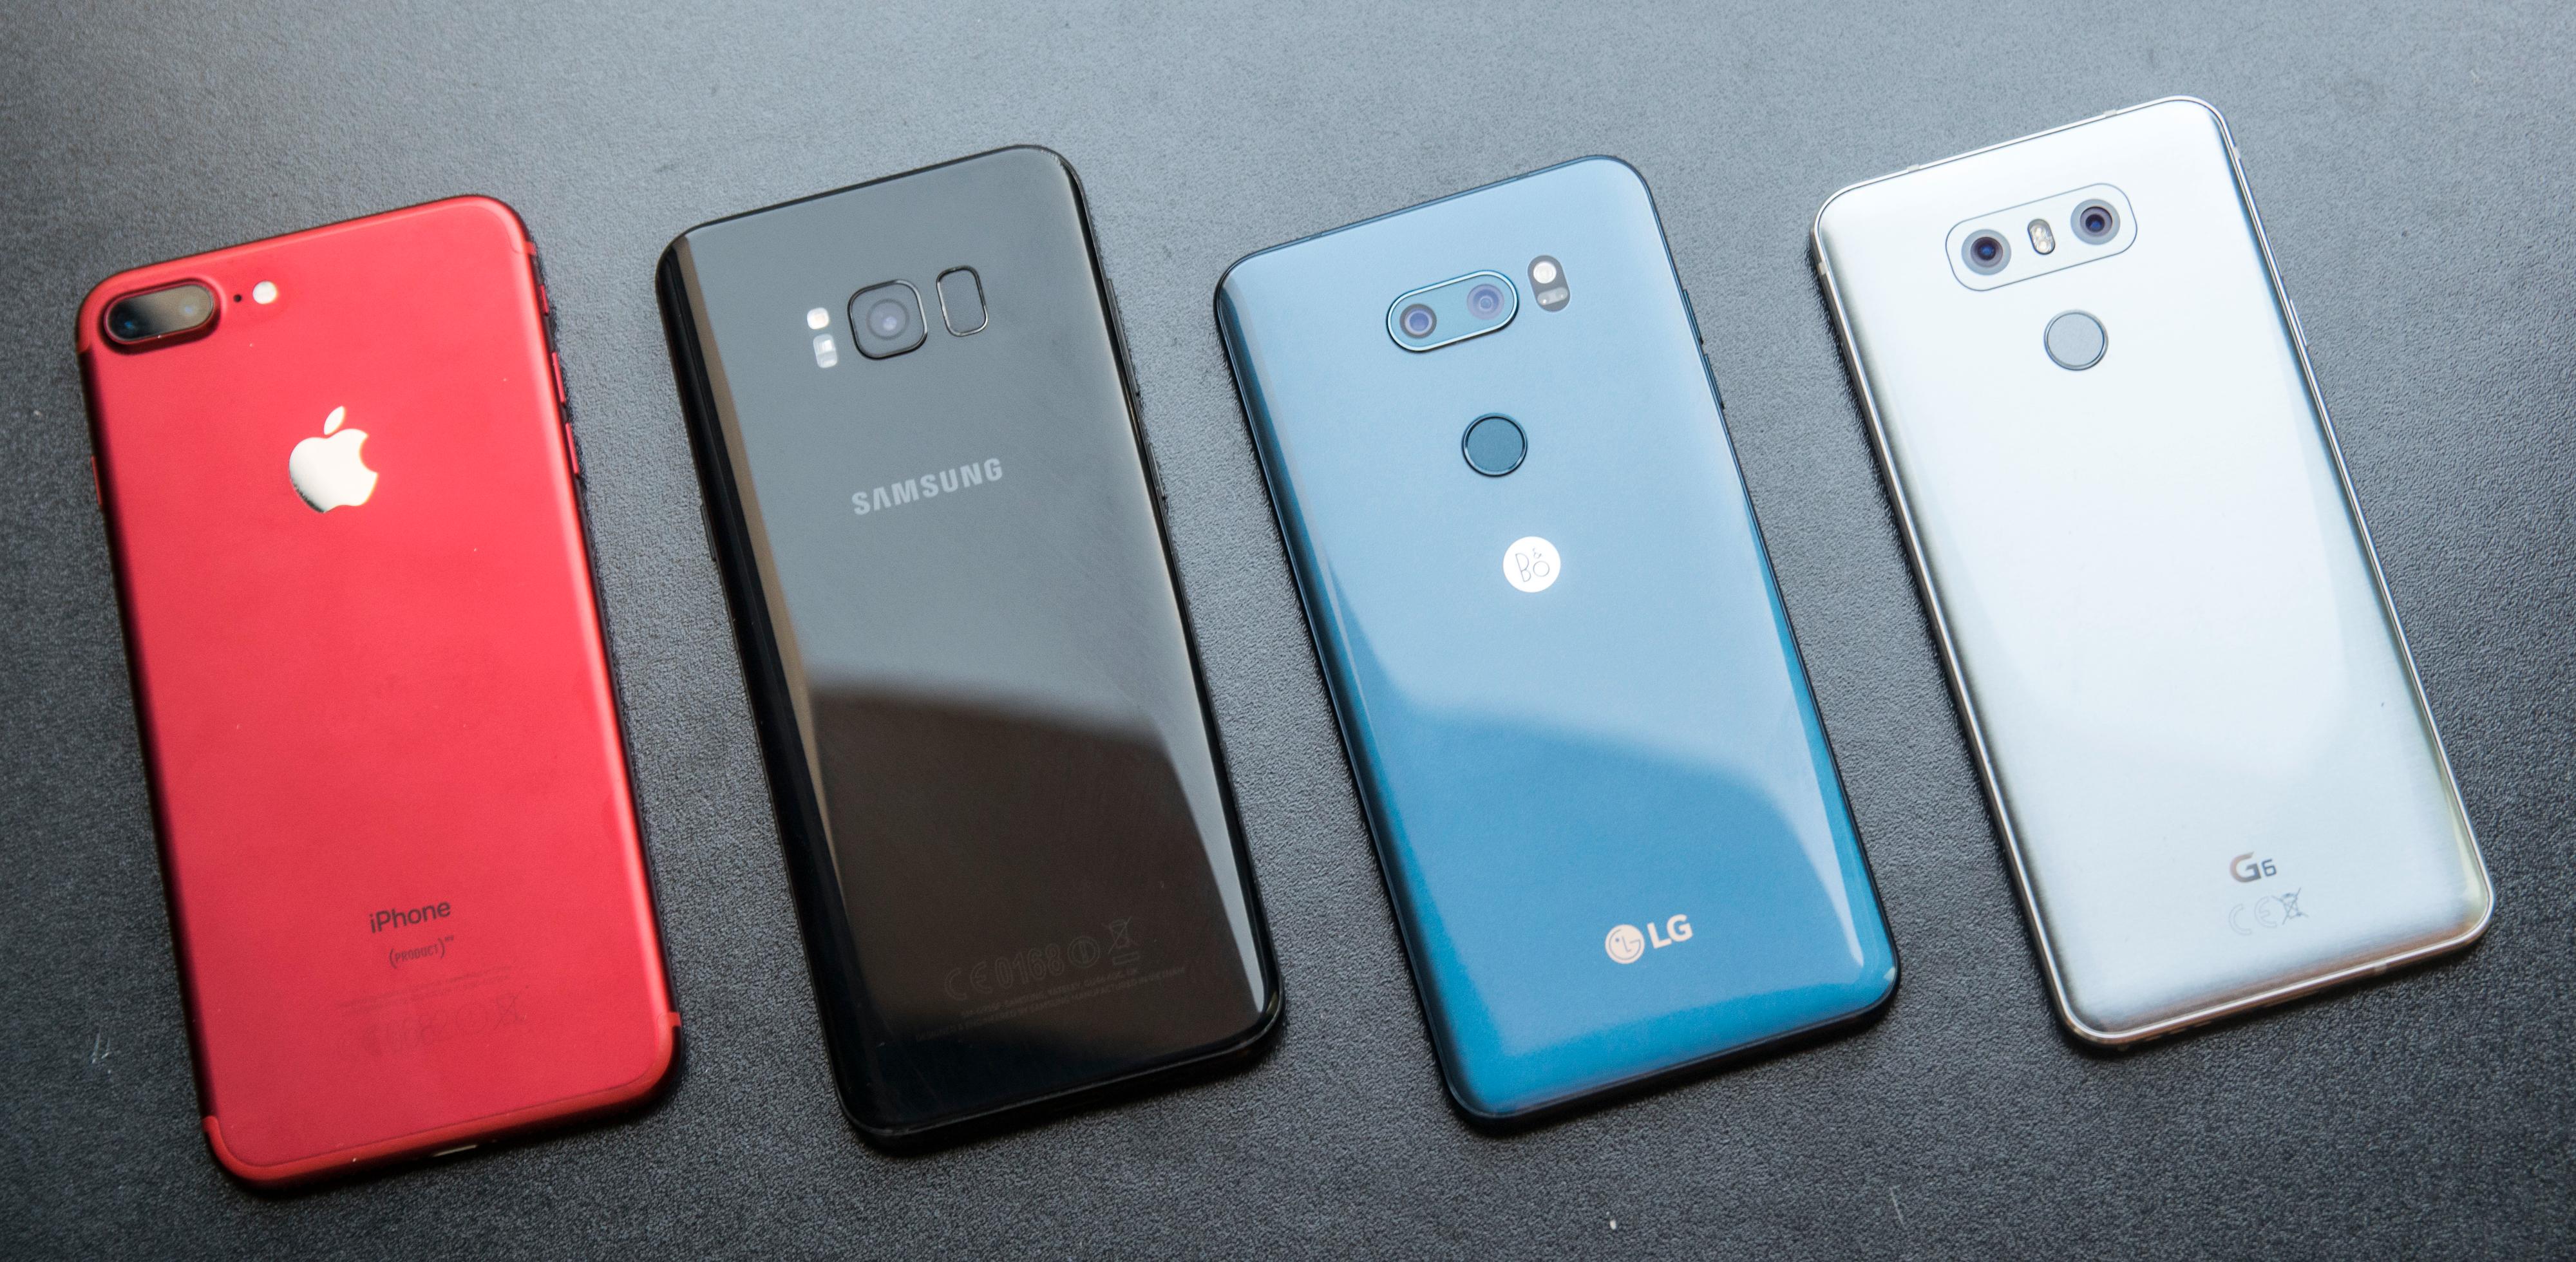 V30 er stor, men ikke diger. Fra venstre: Apple iPhone 7 Plus, Samsung Galaxy S8, LG V30, LG G6.